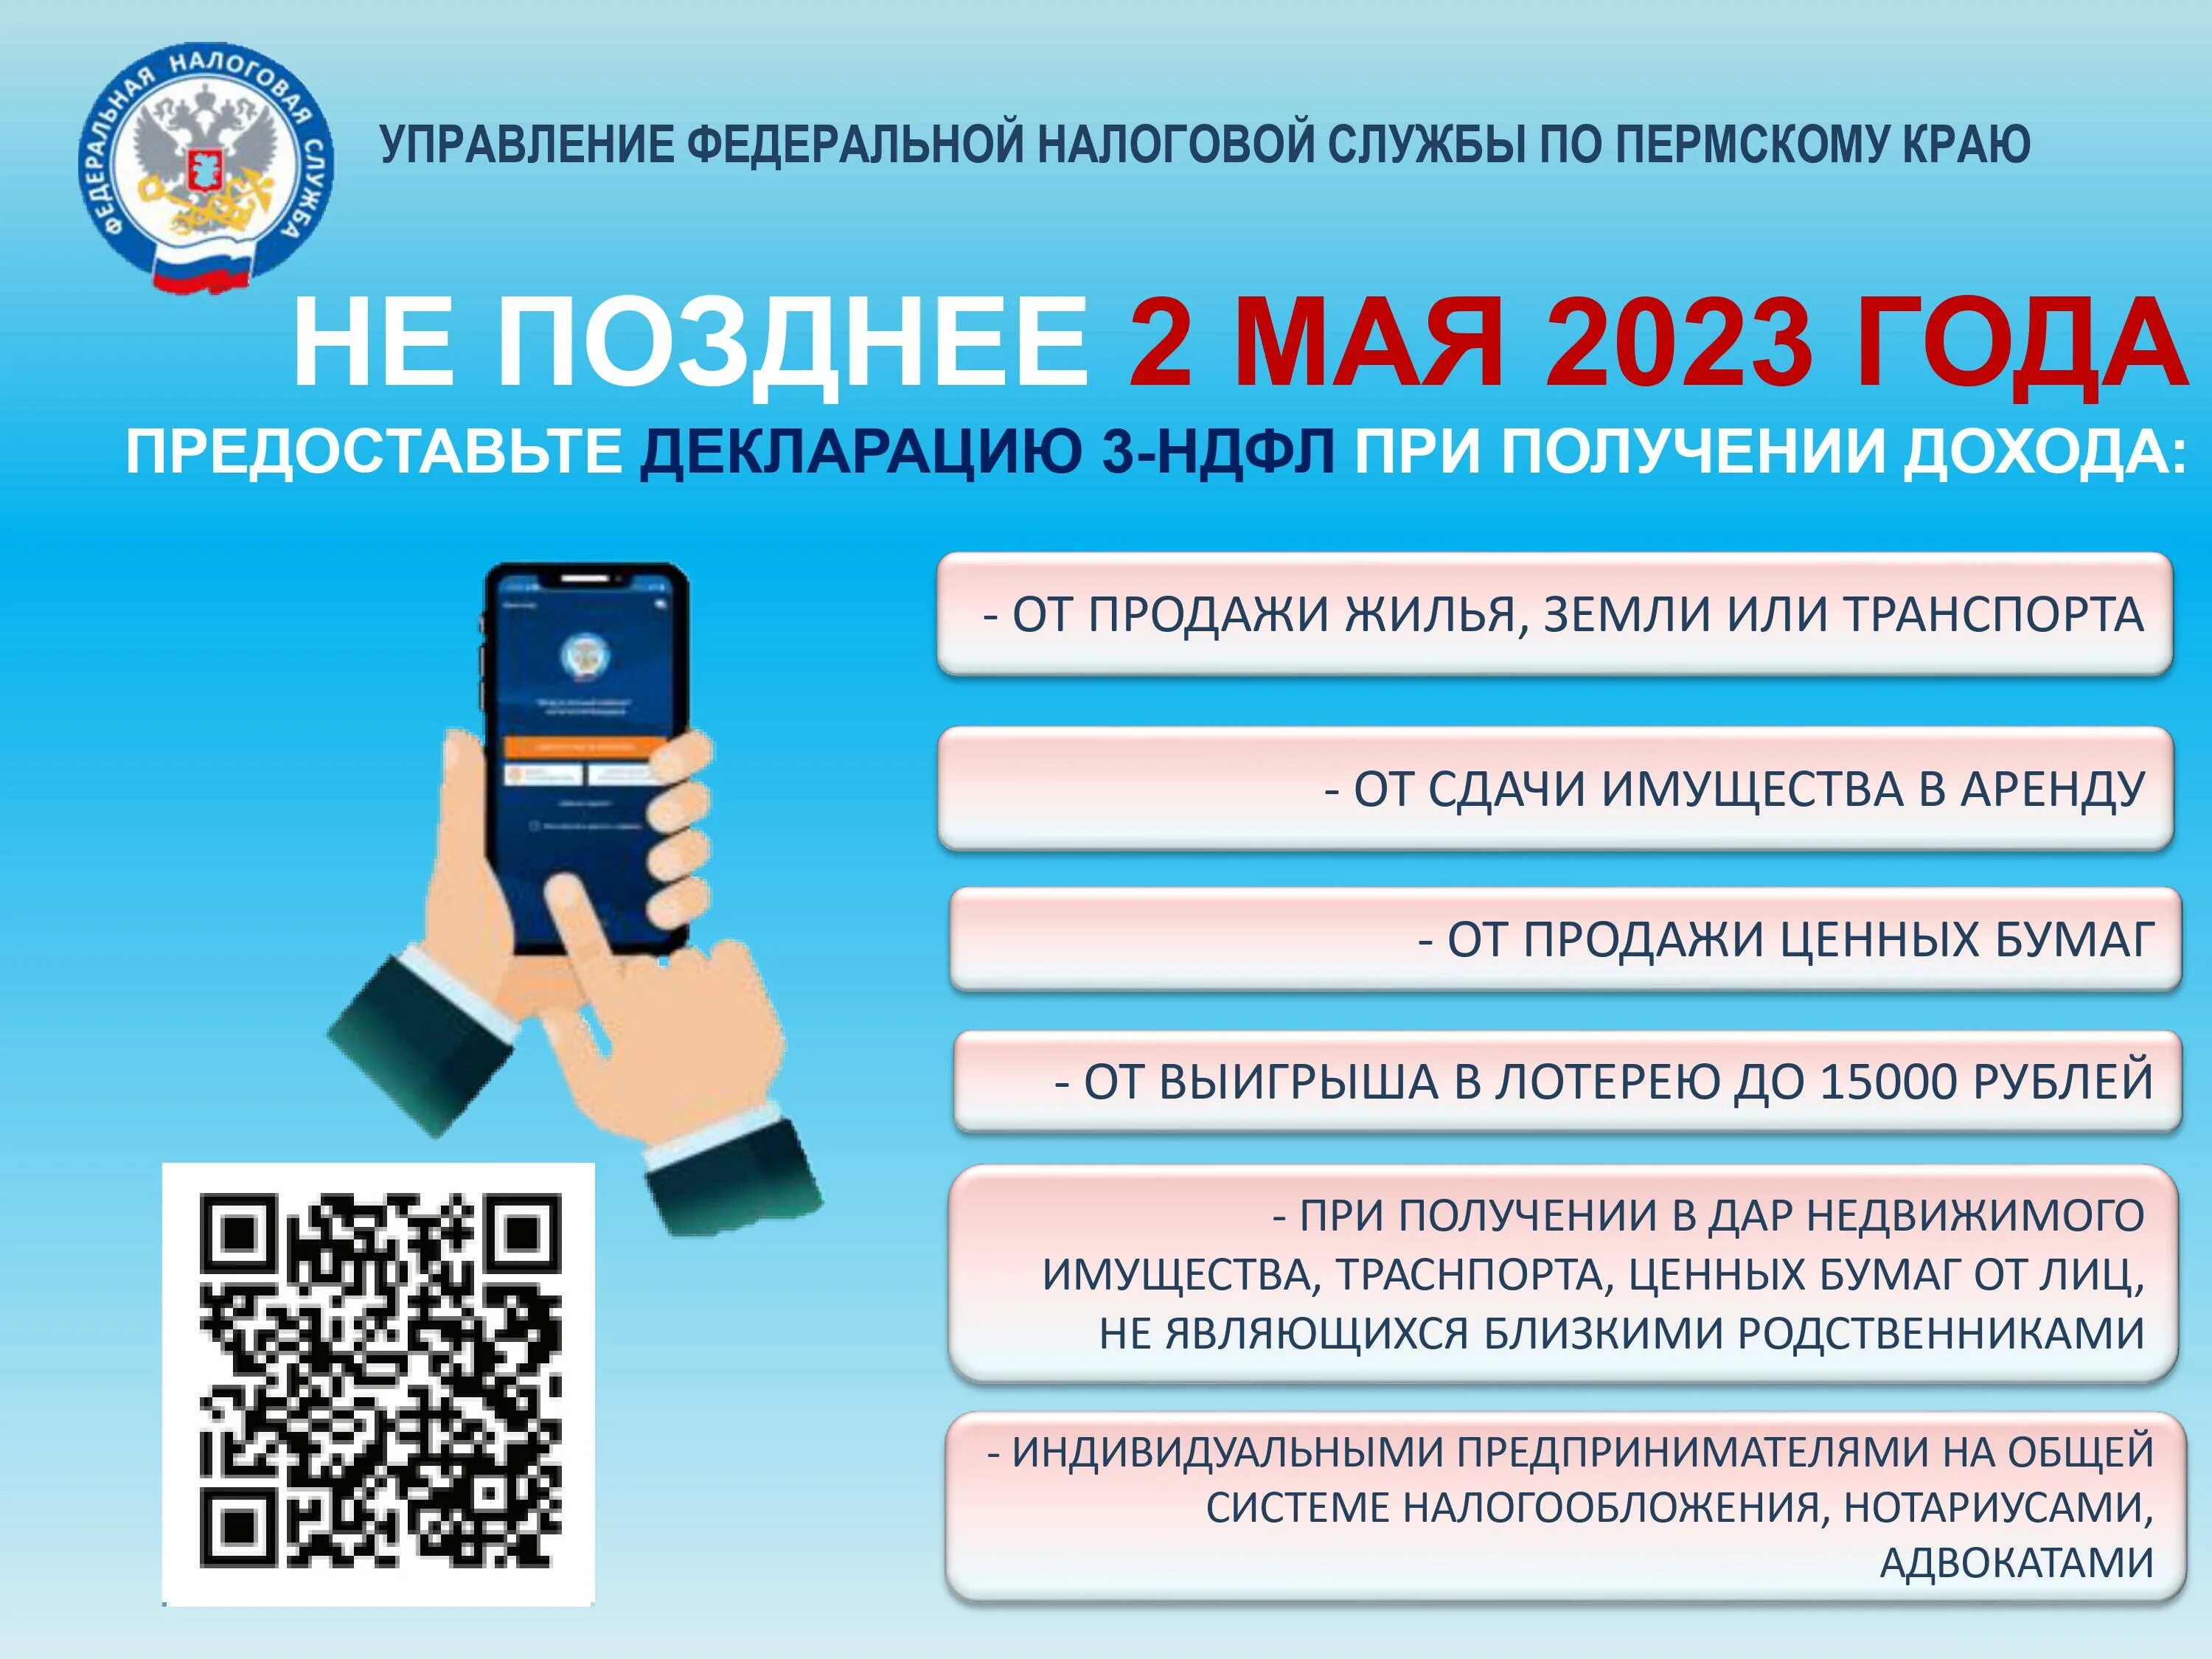 Подоходный налог в беларуси 2023 году. Декларационная кампания 2023. Декларация 2023. 3 НДФЛ 2023. Декларация в 2023 году.